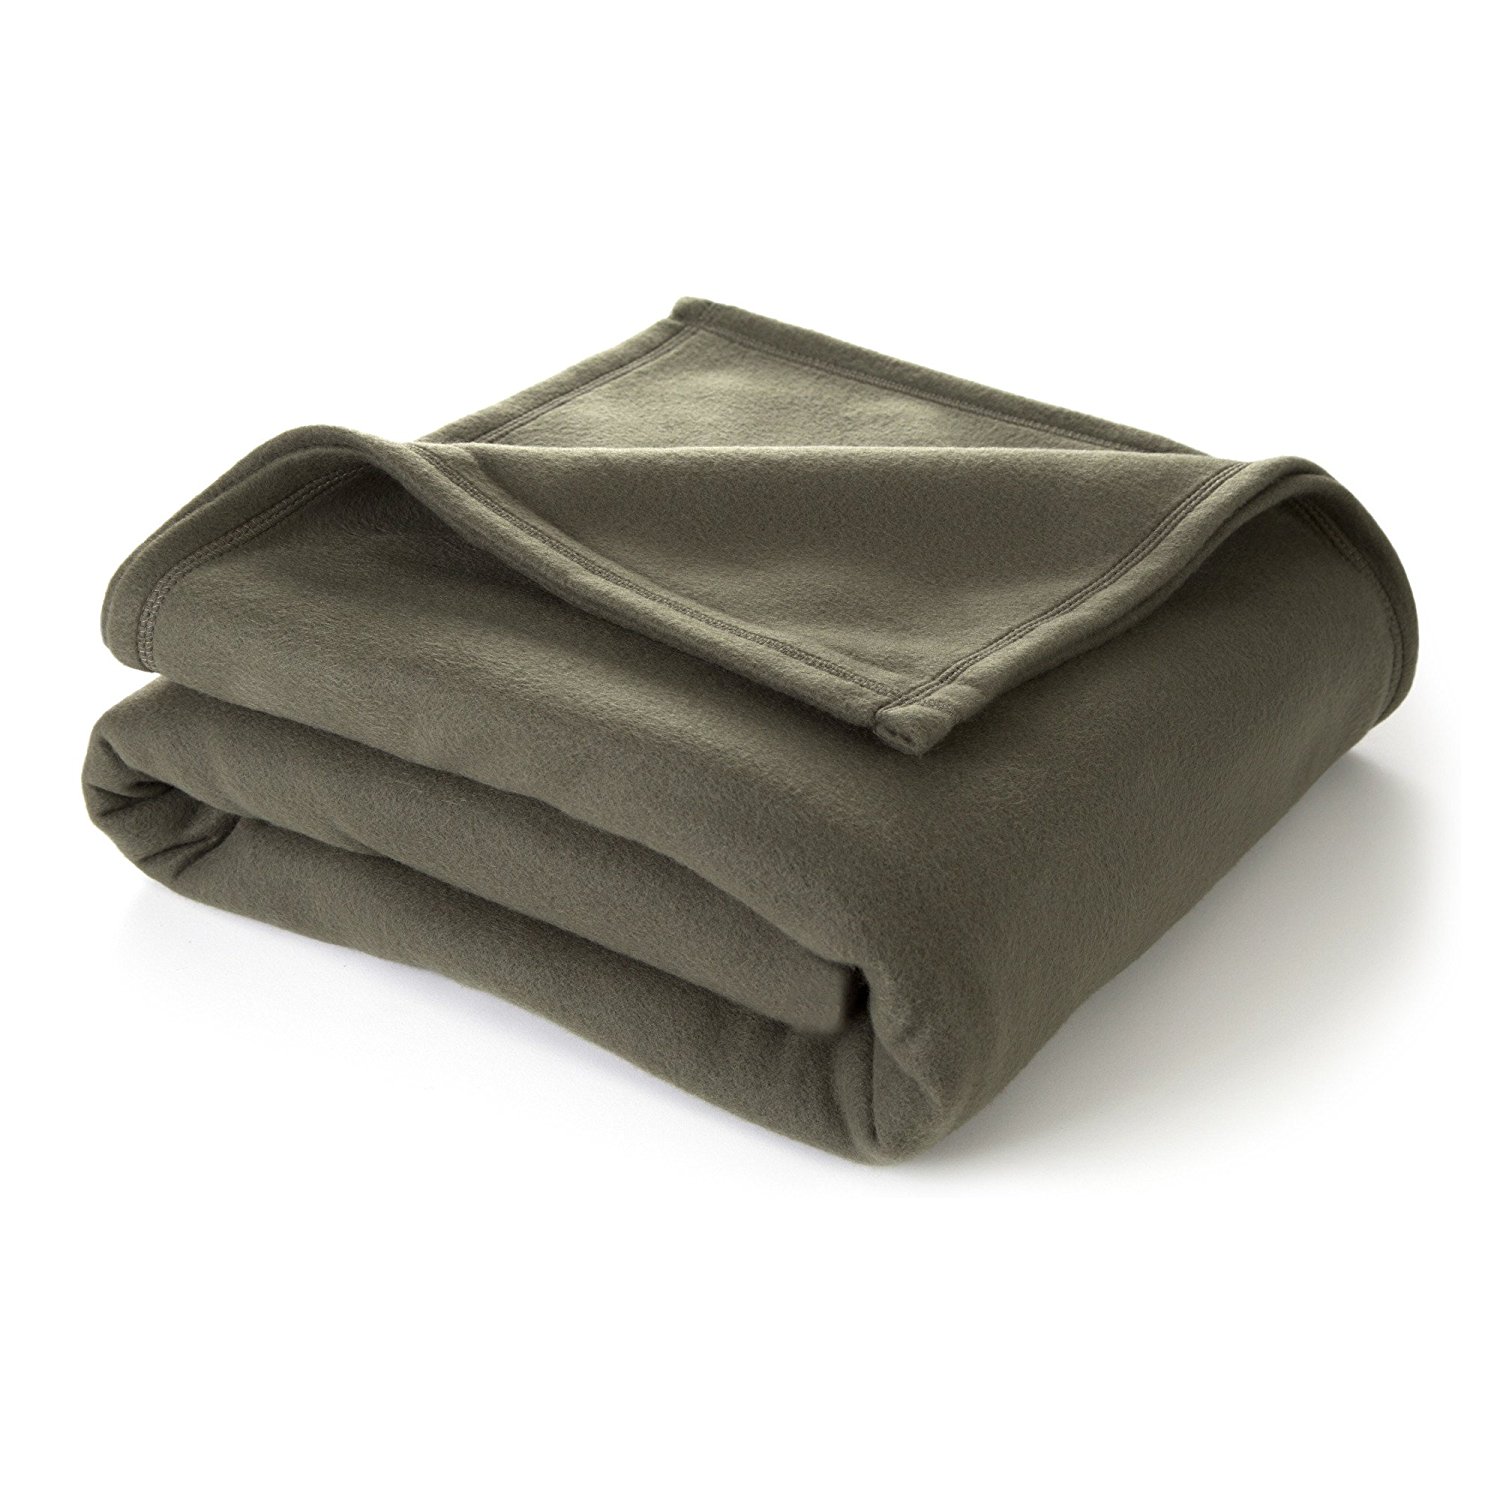 Amazon.com: Martex Super Soft Fleece Blanket - Full/Queen, Warm ...